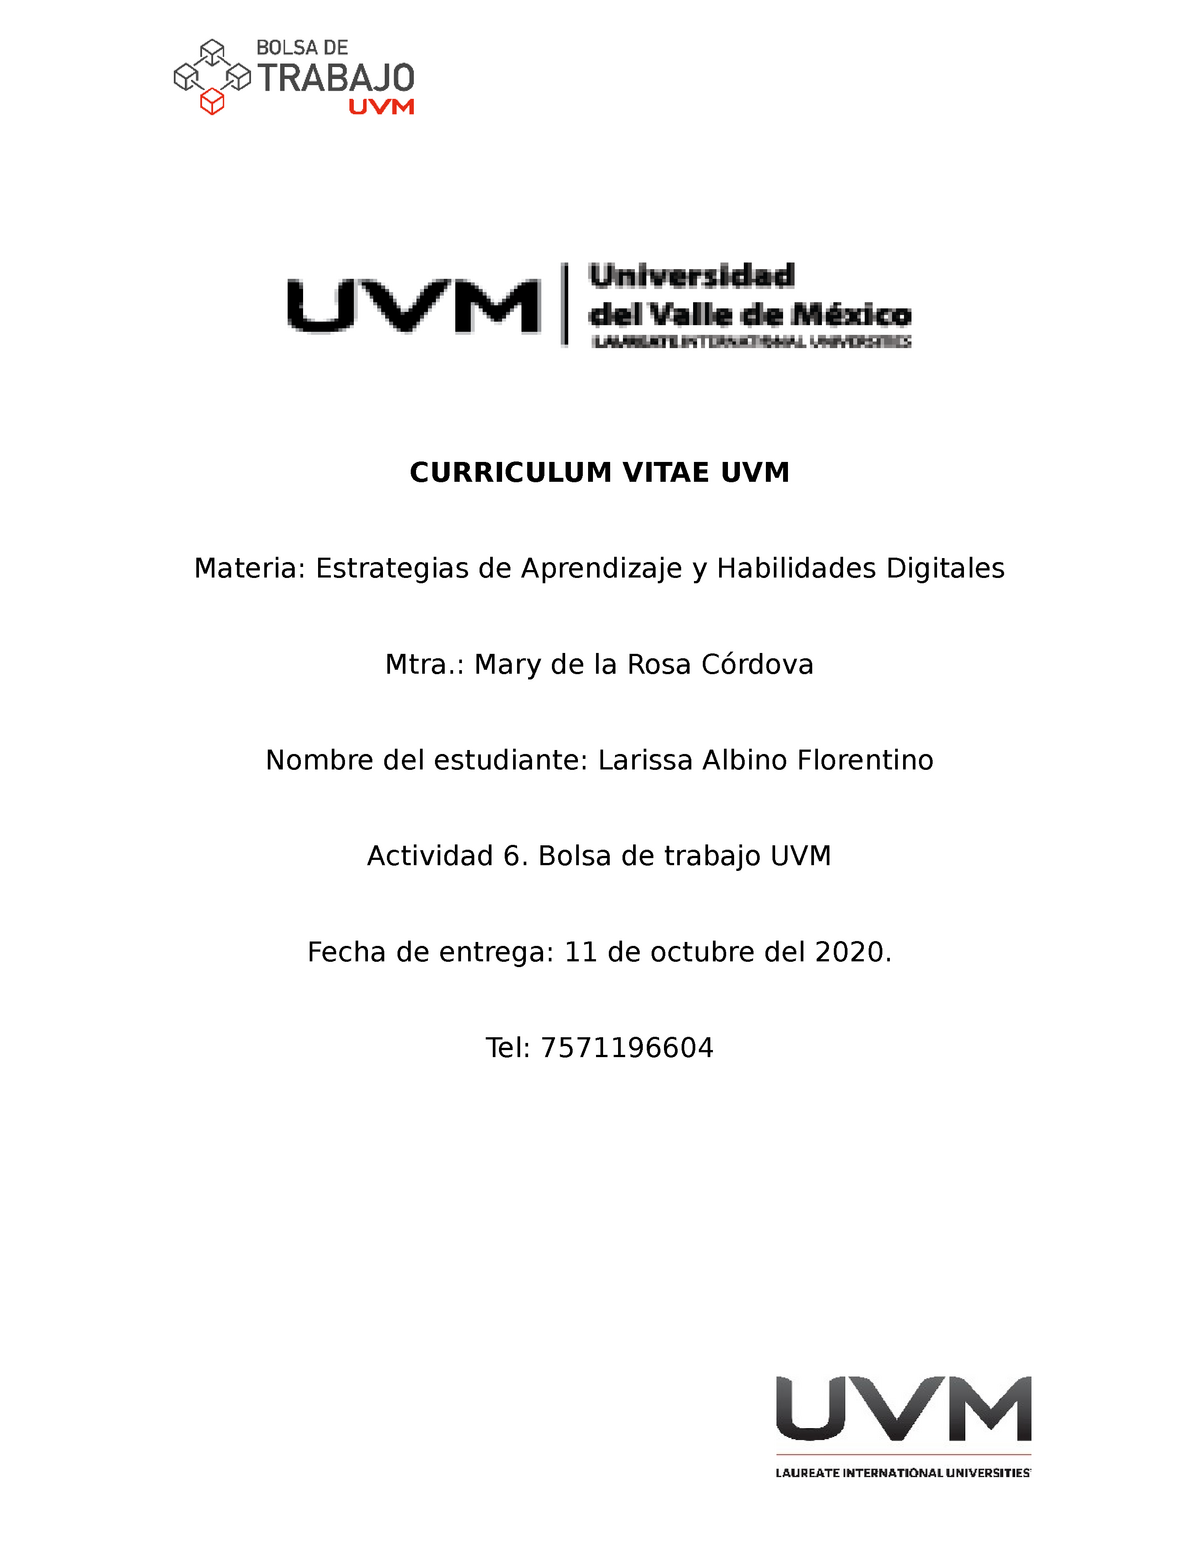 Formato UVM BT - CURRICULUM VITAE UVM Materia: Estrategias de Aprendizaje y  Habilidades Digitales - Studocu